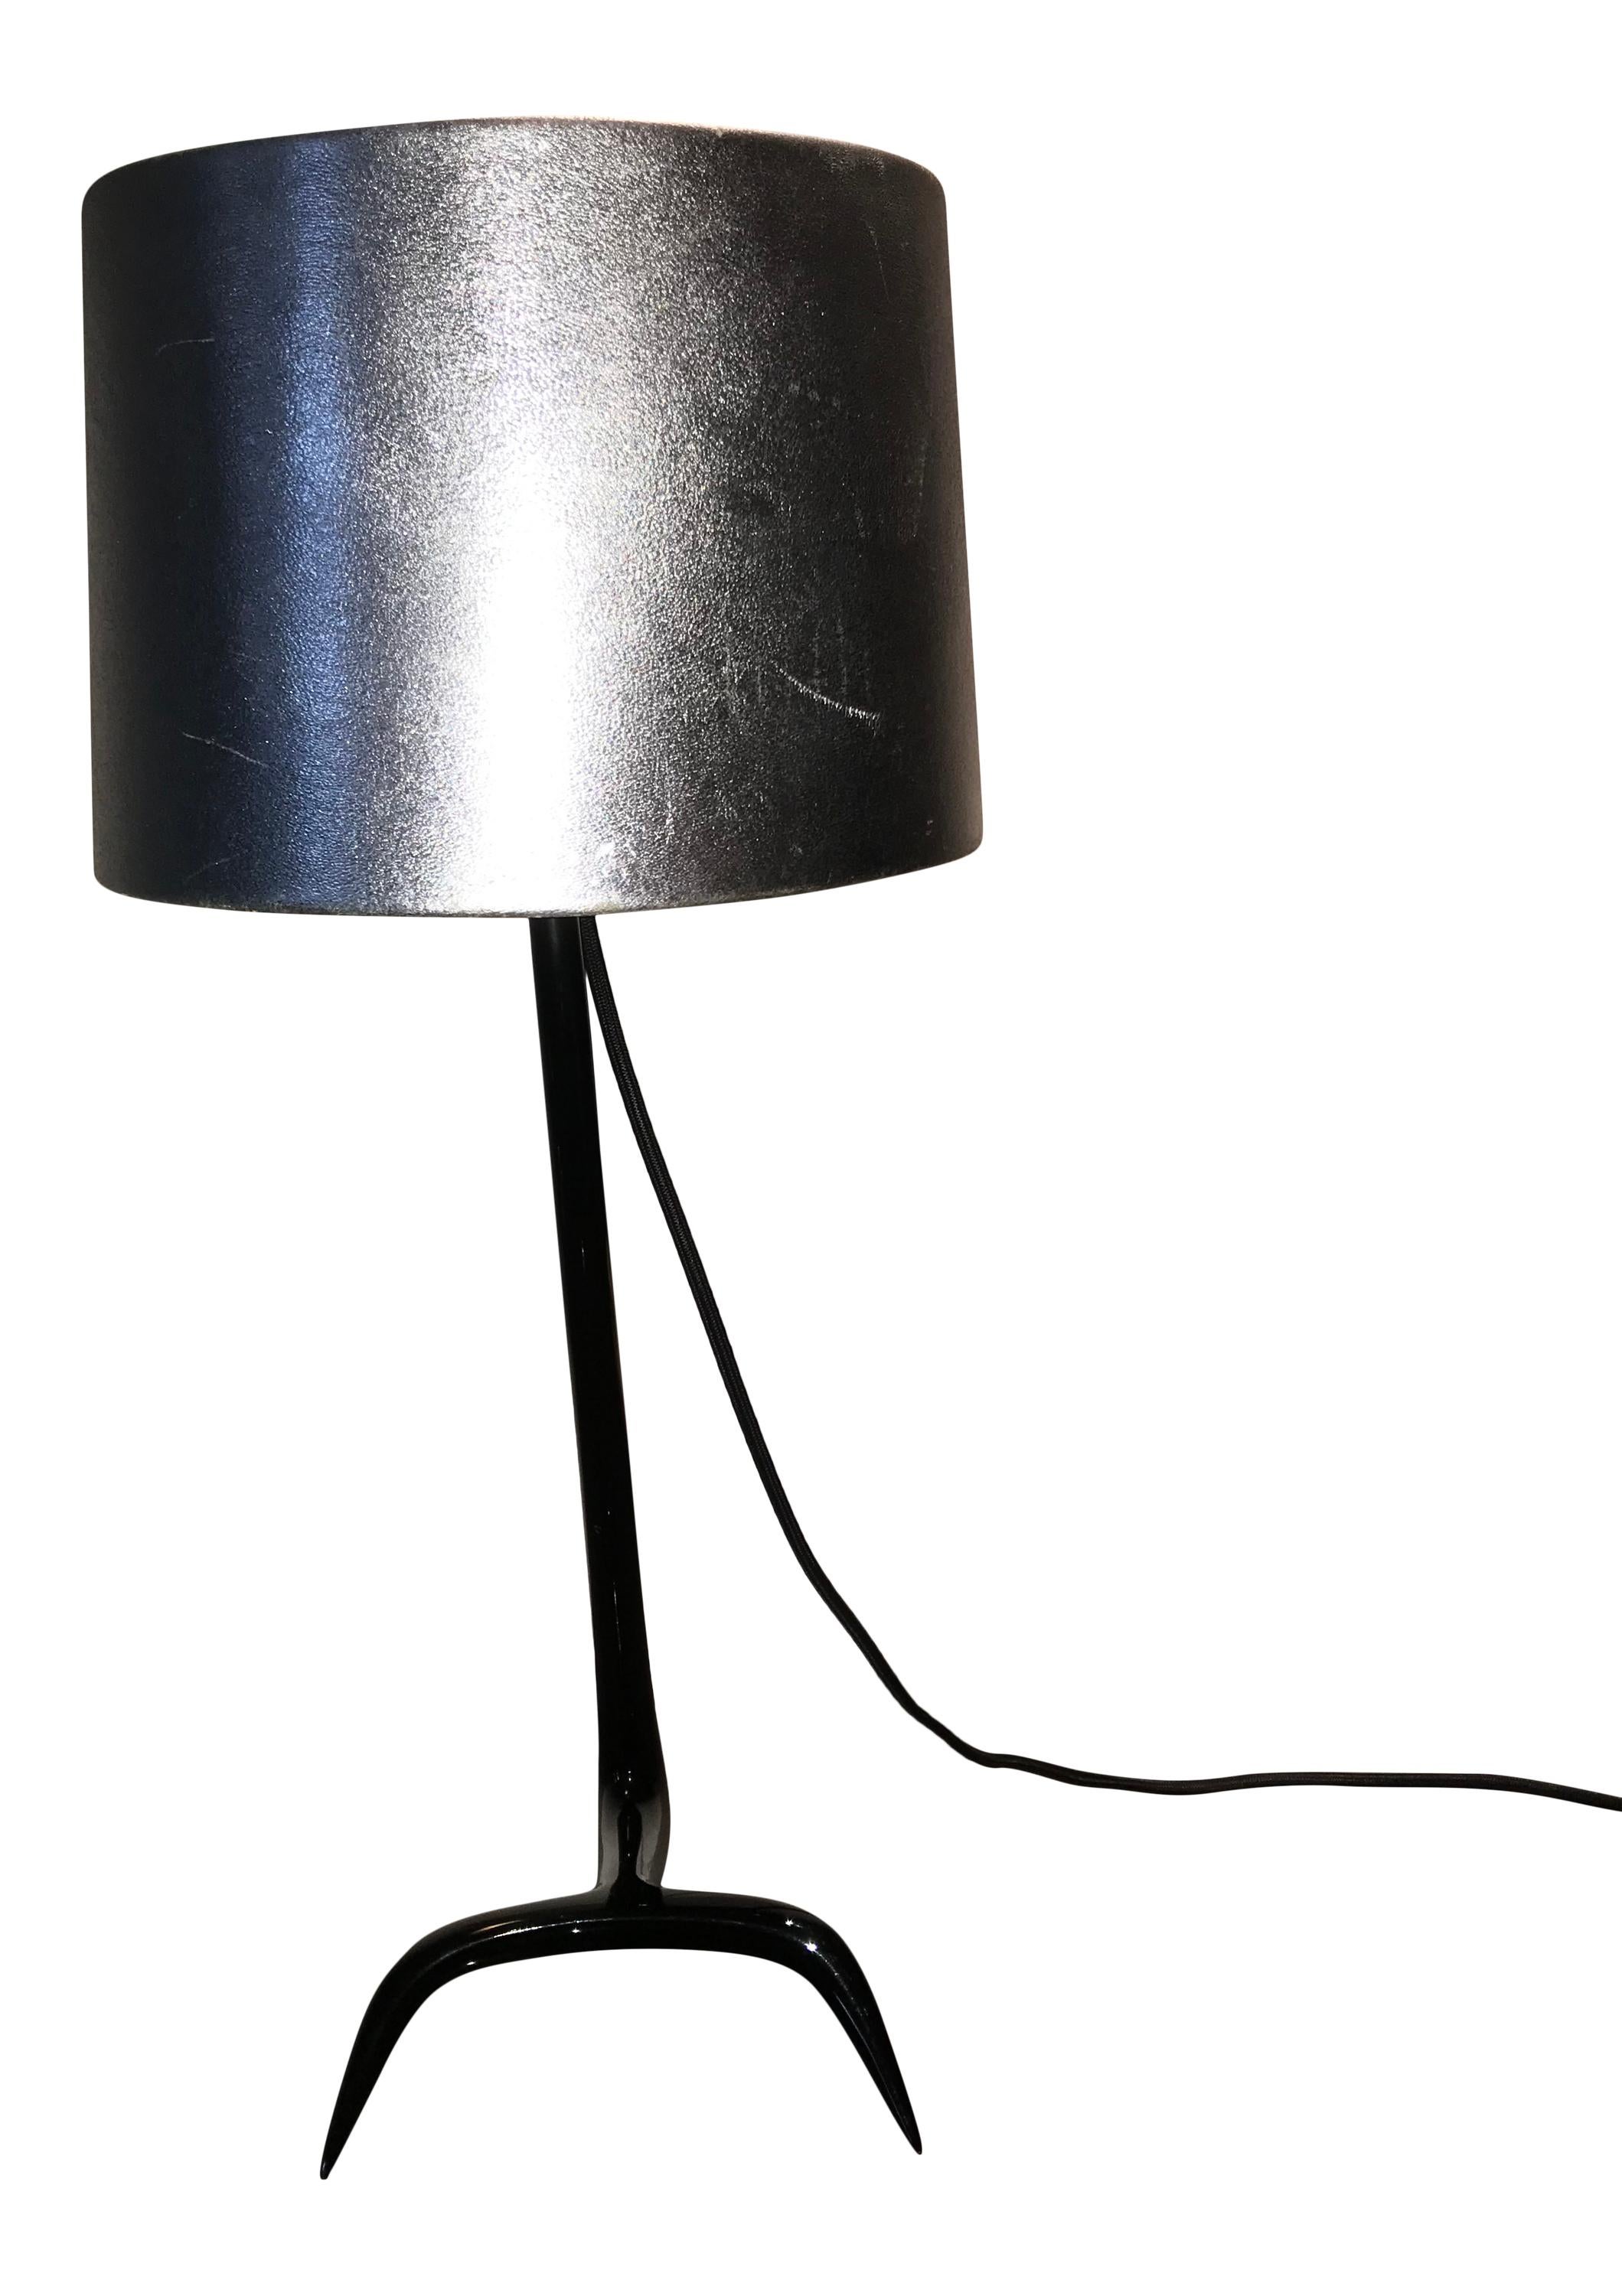 Cette superbe lampe de table fabriquée par la Maison Charles dans ses ateliers de Saint-Denis, à Paris, a été conçue à l'origine par Jacques Charles dans les années 1970 et a été rééditée au début du 21e siècle en édition limitée, en résine coulée